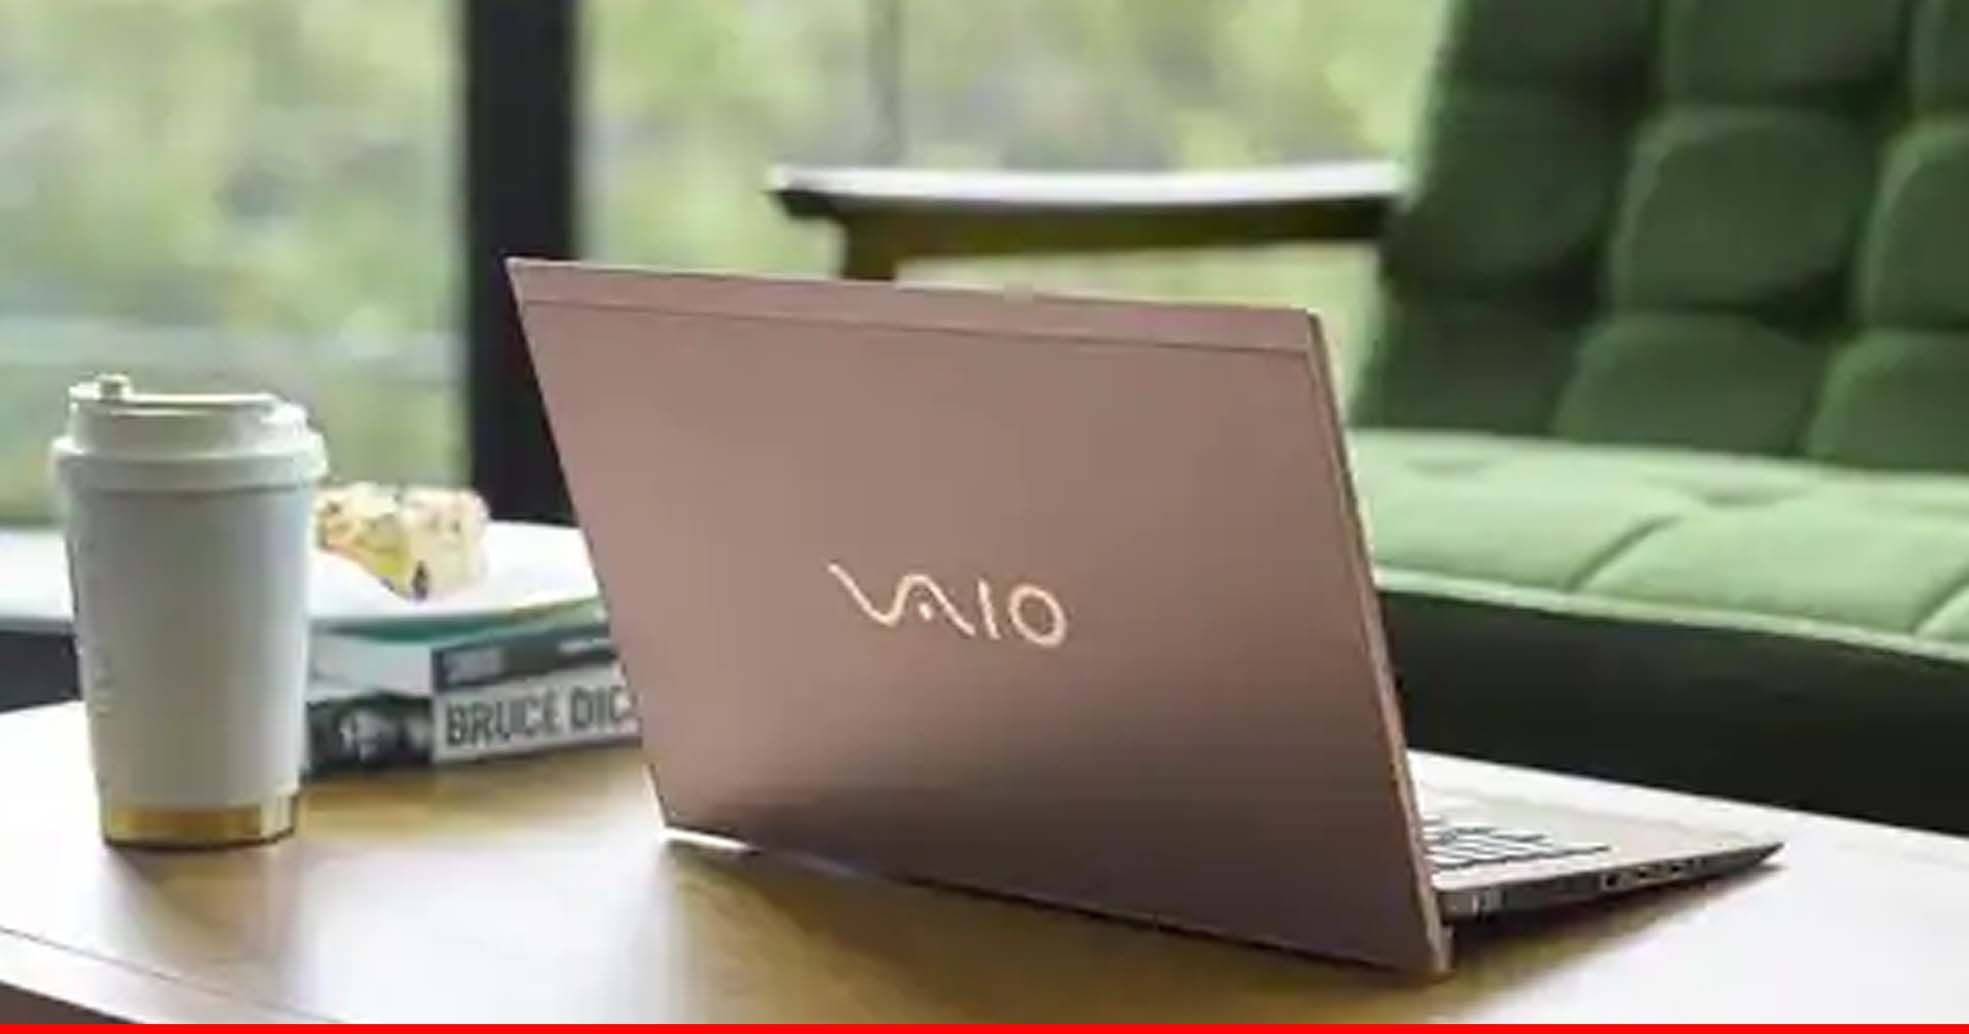 Vaio ने लॉन्च किए दो शानदार लैपटॉप, 12 घंटे के बैकअप के साथ मिलेंगी कई खूबियां